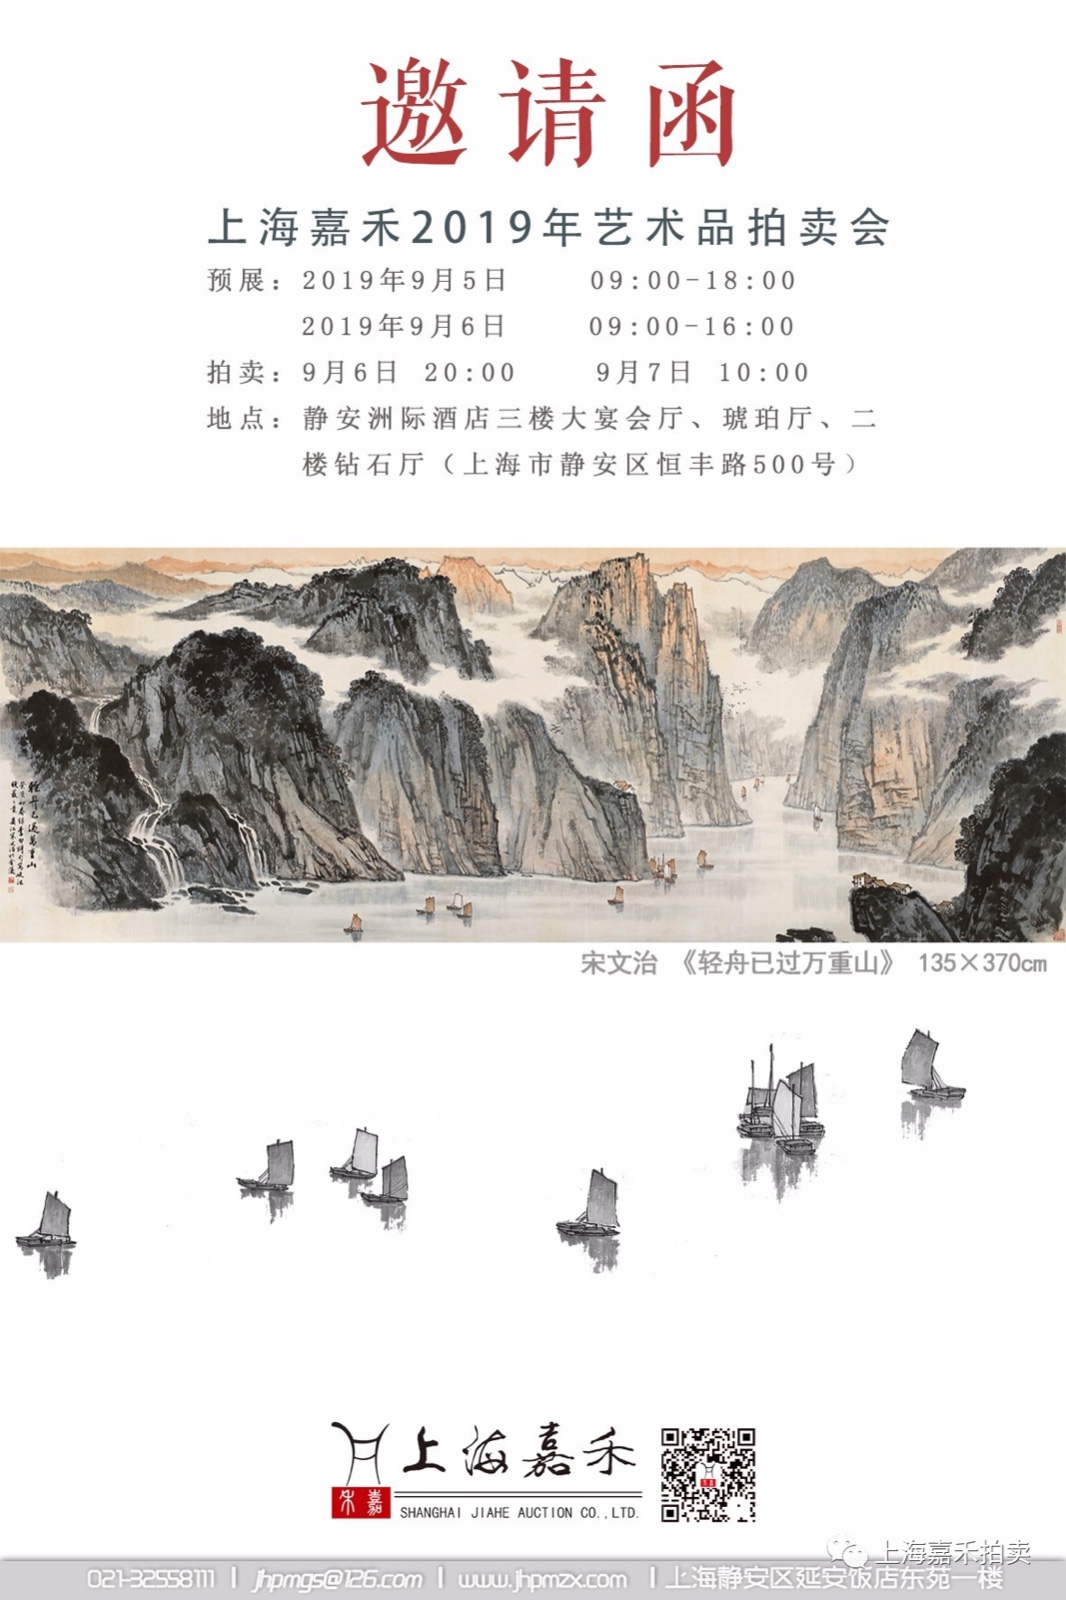 上海嘉禾2019年艺术品拍卖会将于9月6日举槌